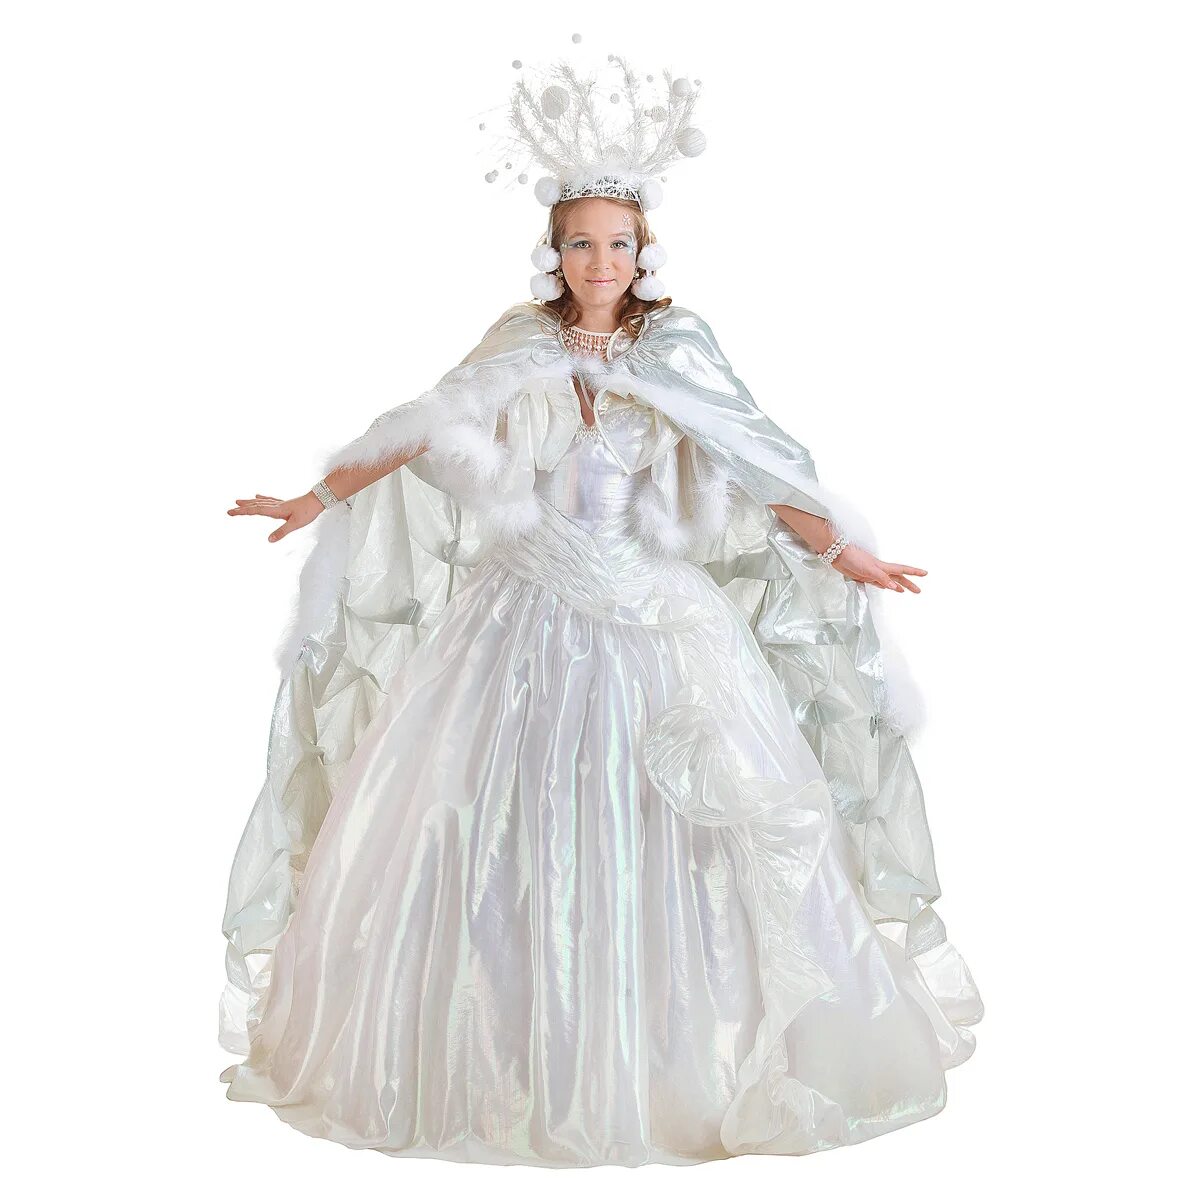 Снежная Королева костюм. Костюм снежной королевы взрослый. Платье королевы. Маскарадный костюм снежной королевы. Белые карнавальные костюмы